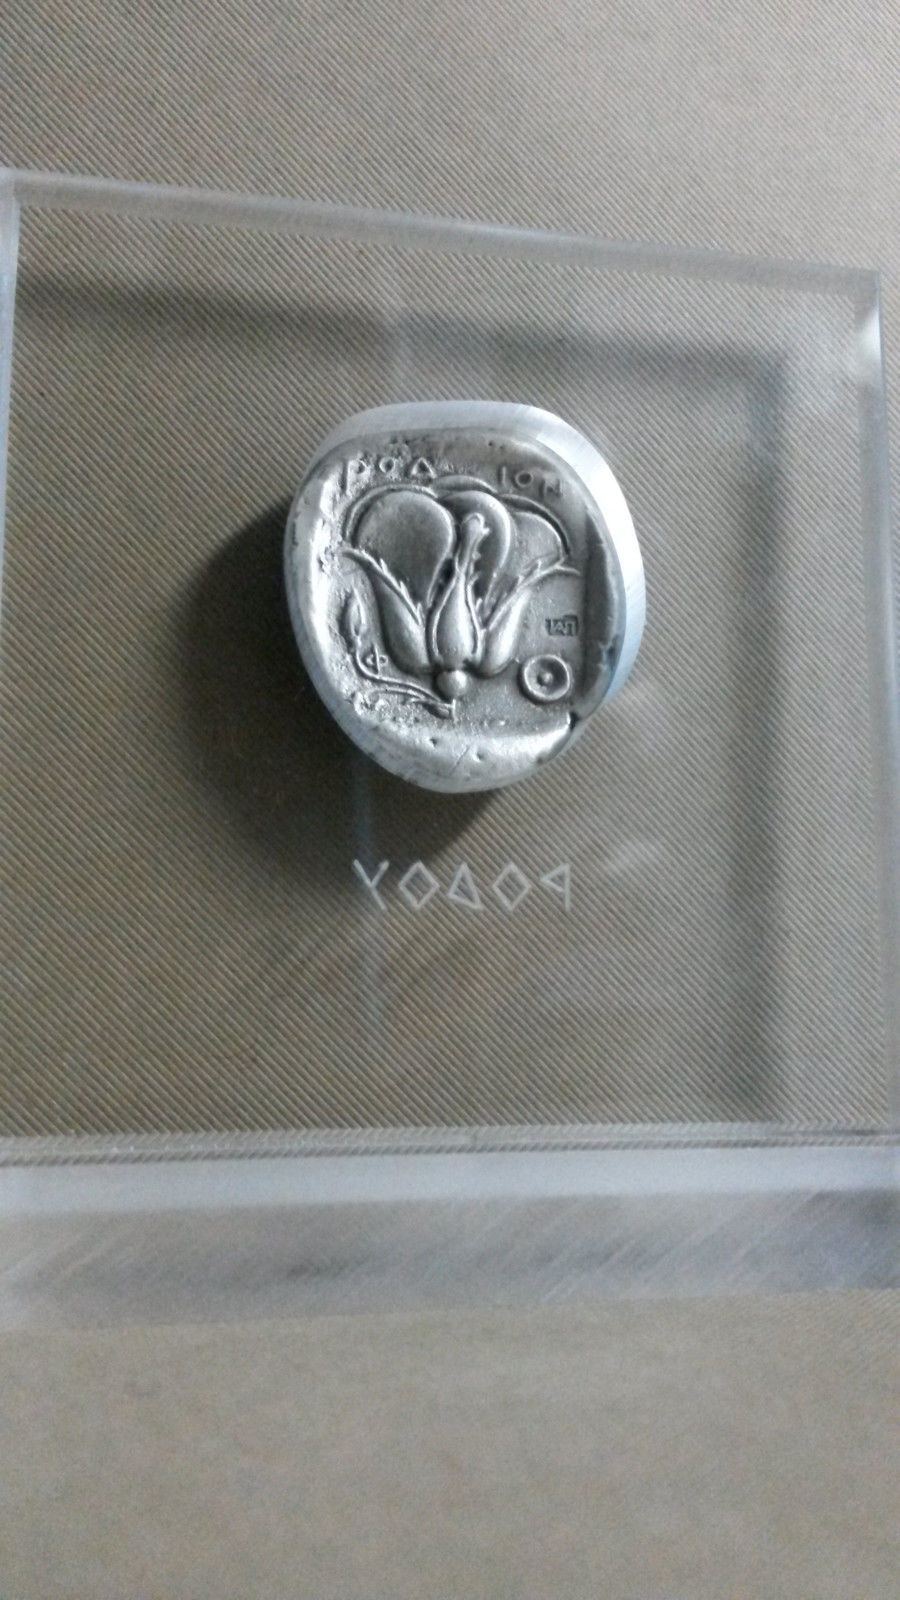 Greek Tetradrachm Rhodes Island Silver Coin